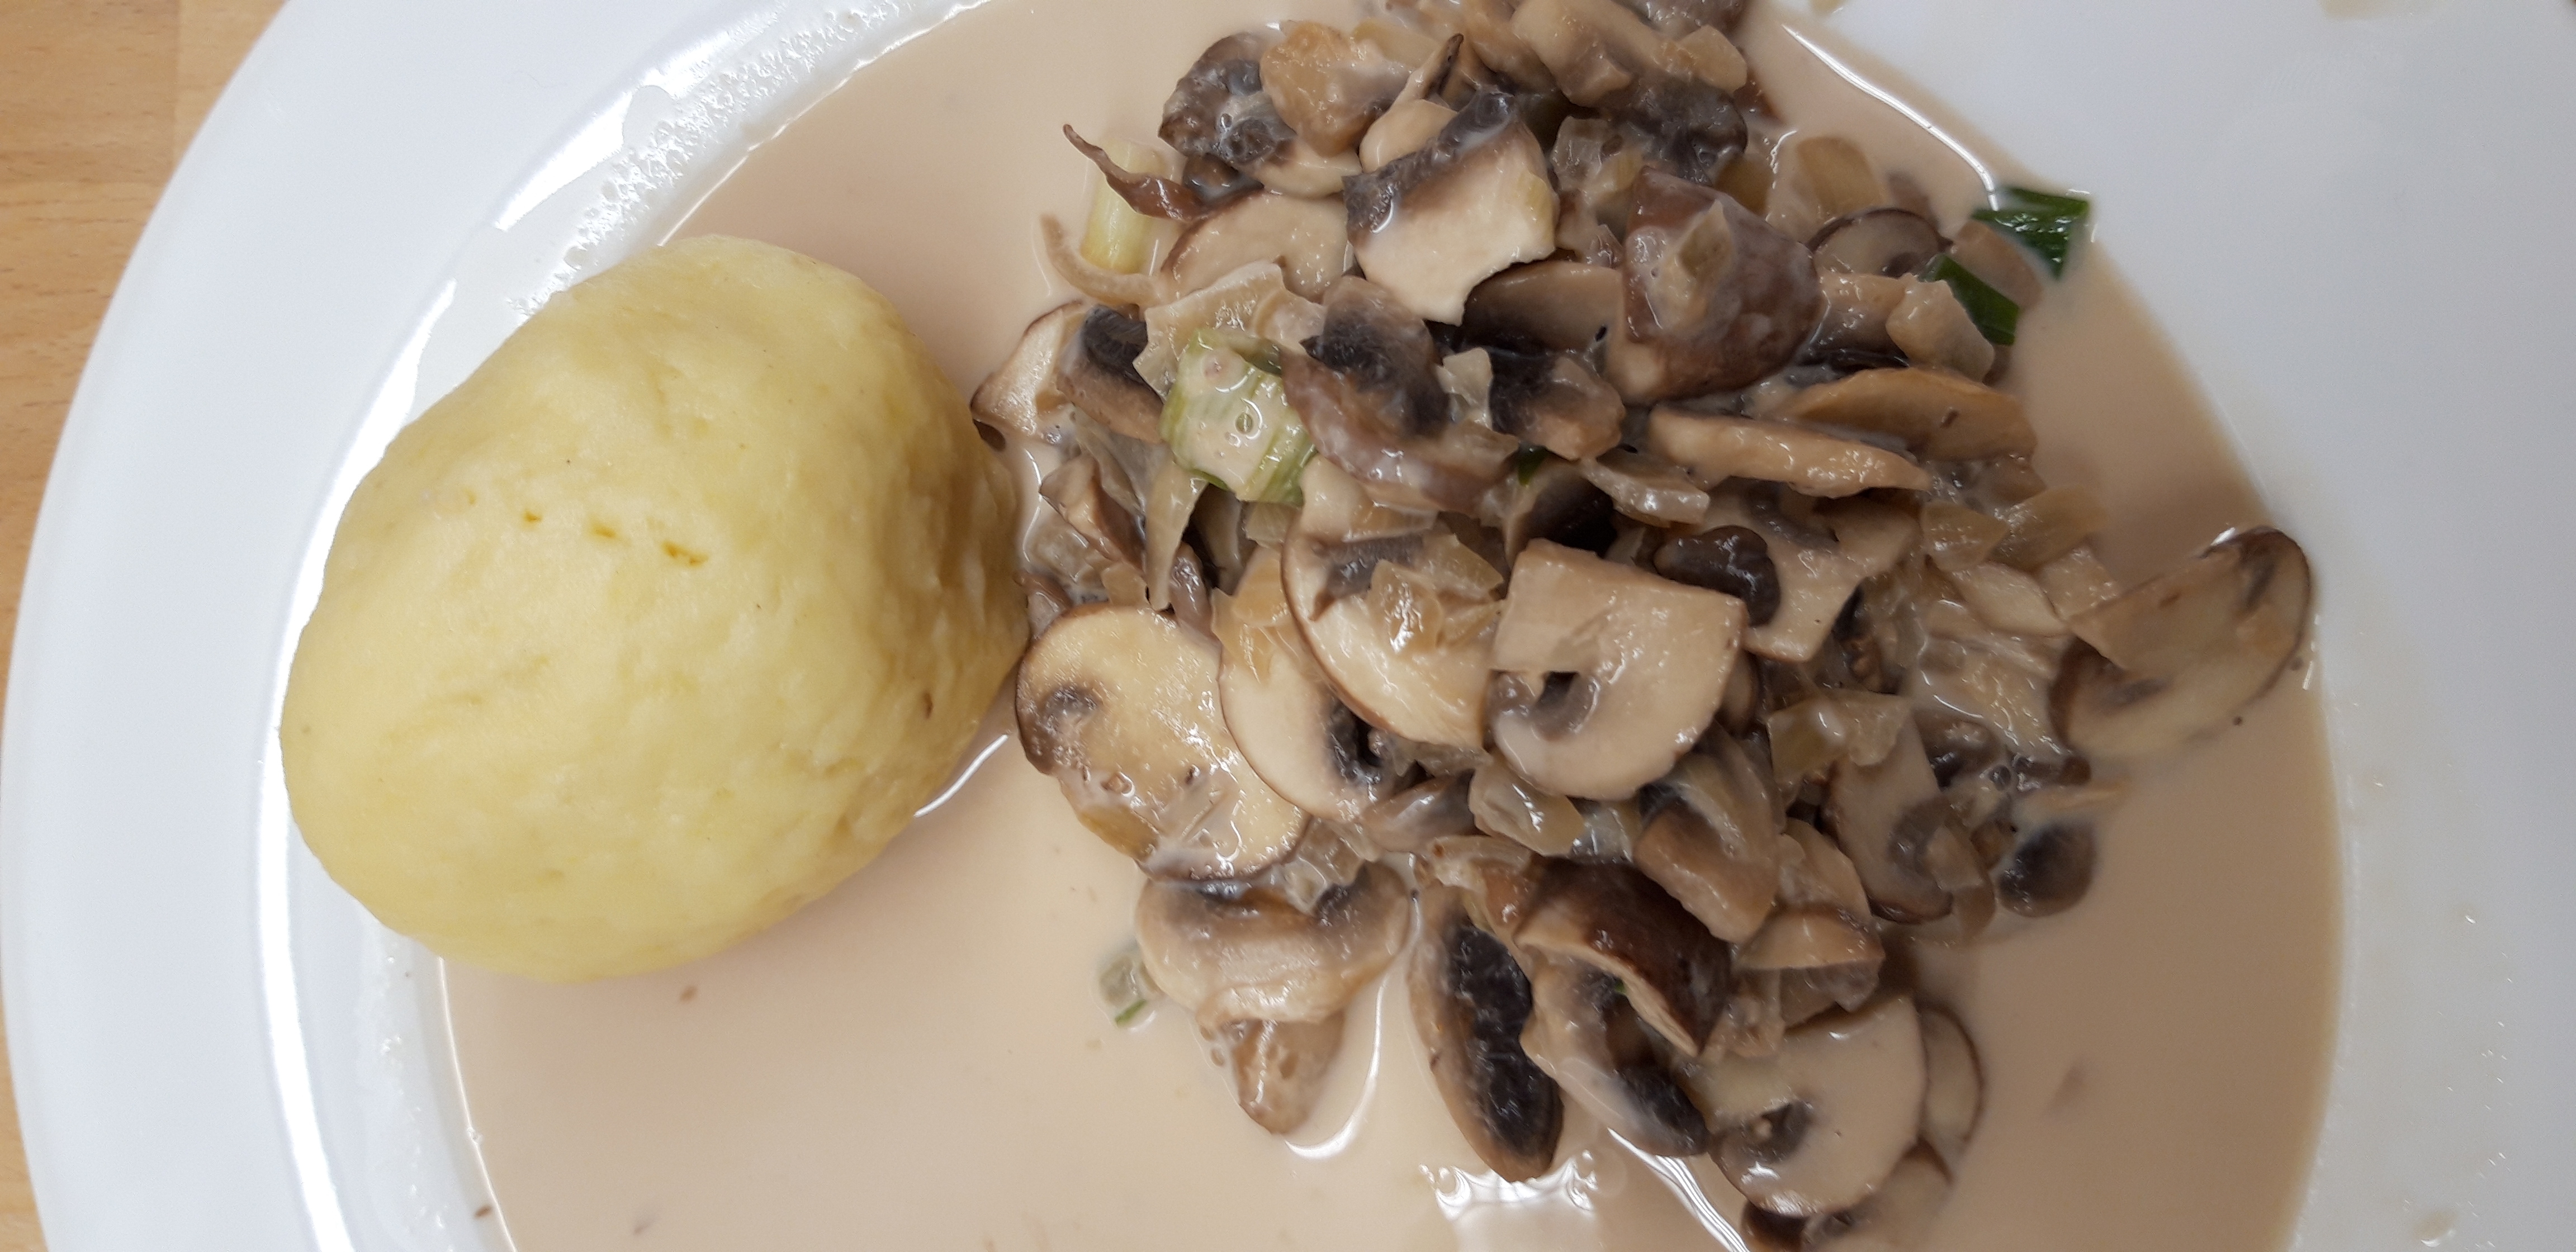 Kartoffelknödel mit Pilzragout — Kilopurzel